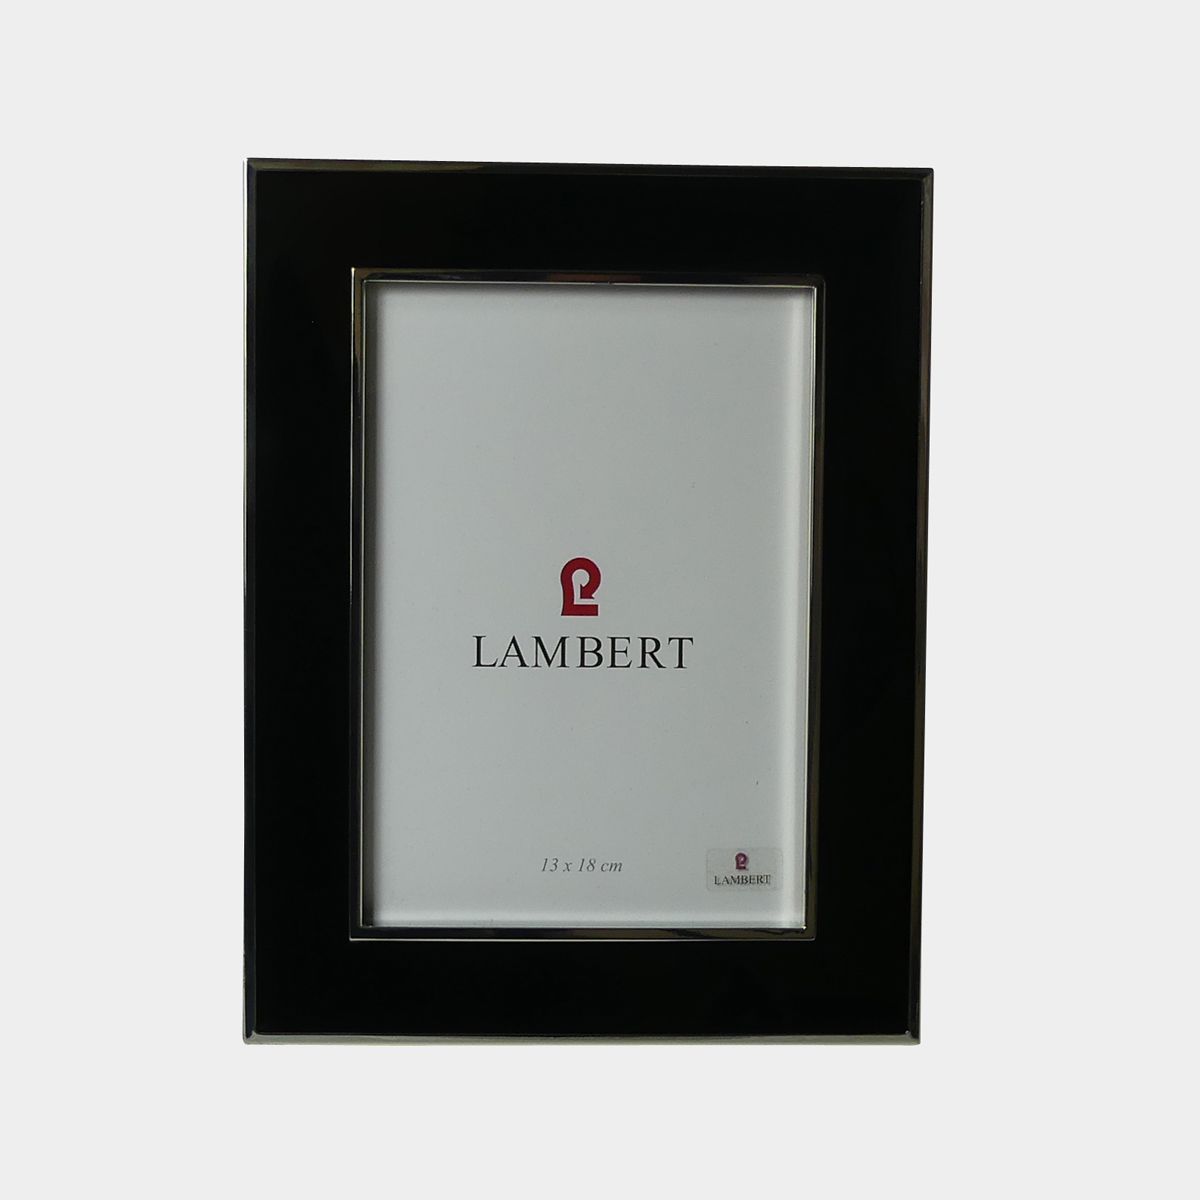 Lambert Portland cm x Zawoh schwarz online kaufen Bilderrahmen 13 18 |